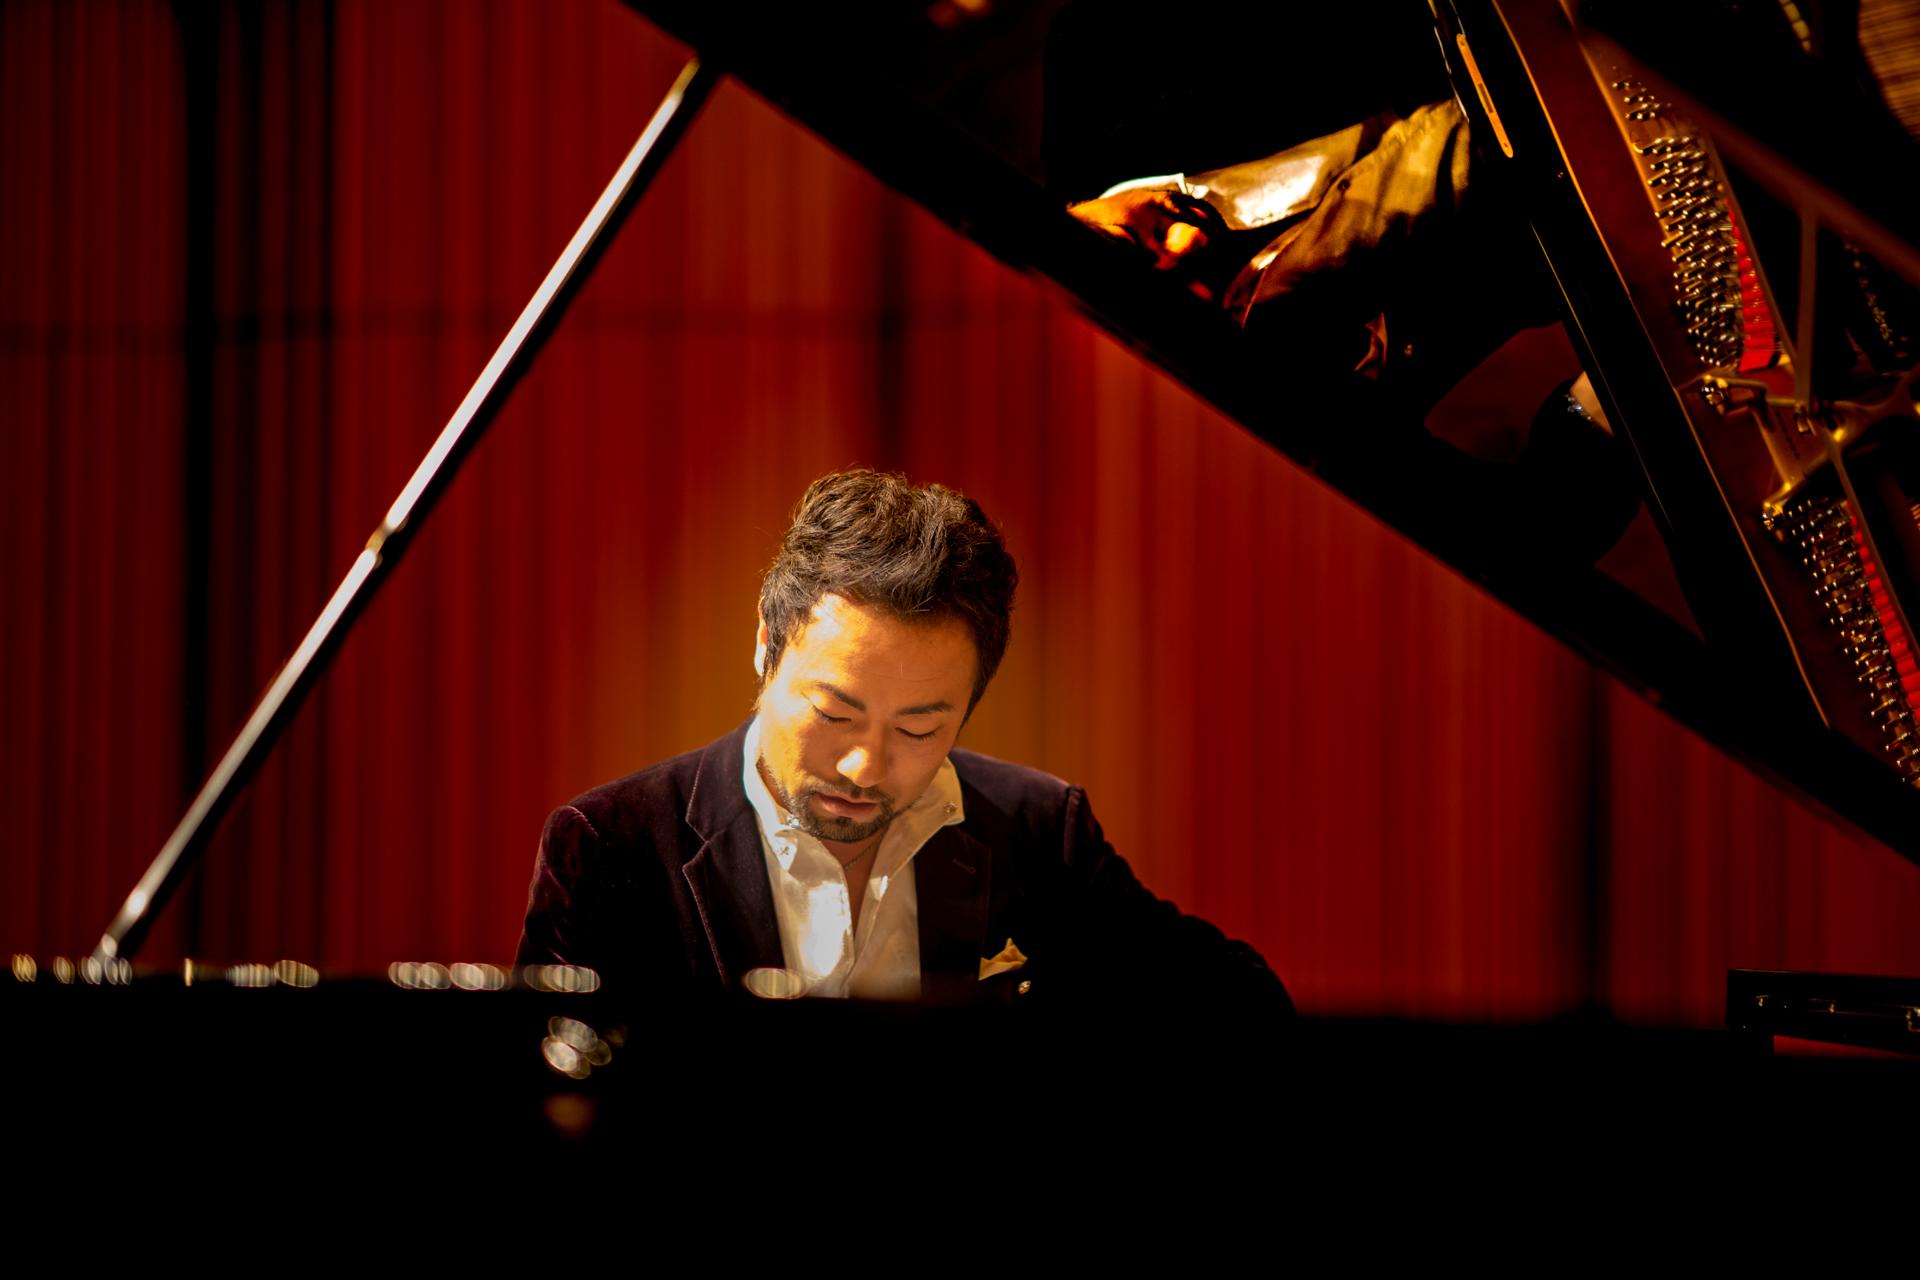 New York Photography Awards Winner - Pianist Gohei Nishikawa